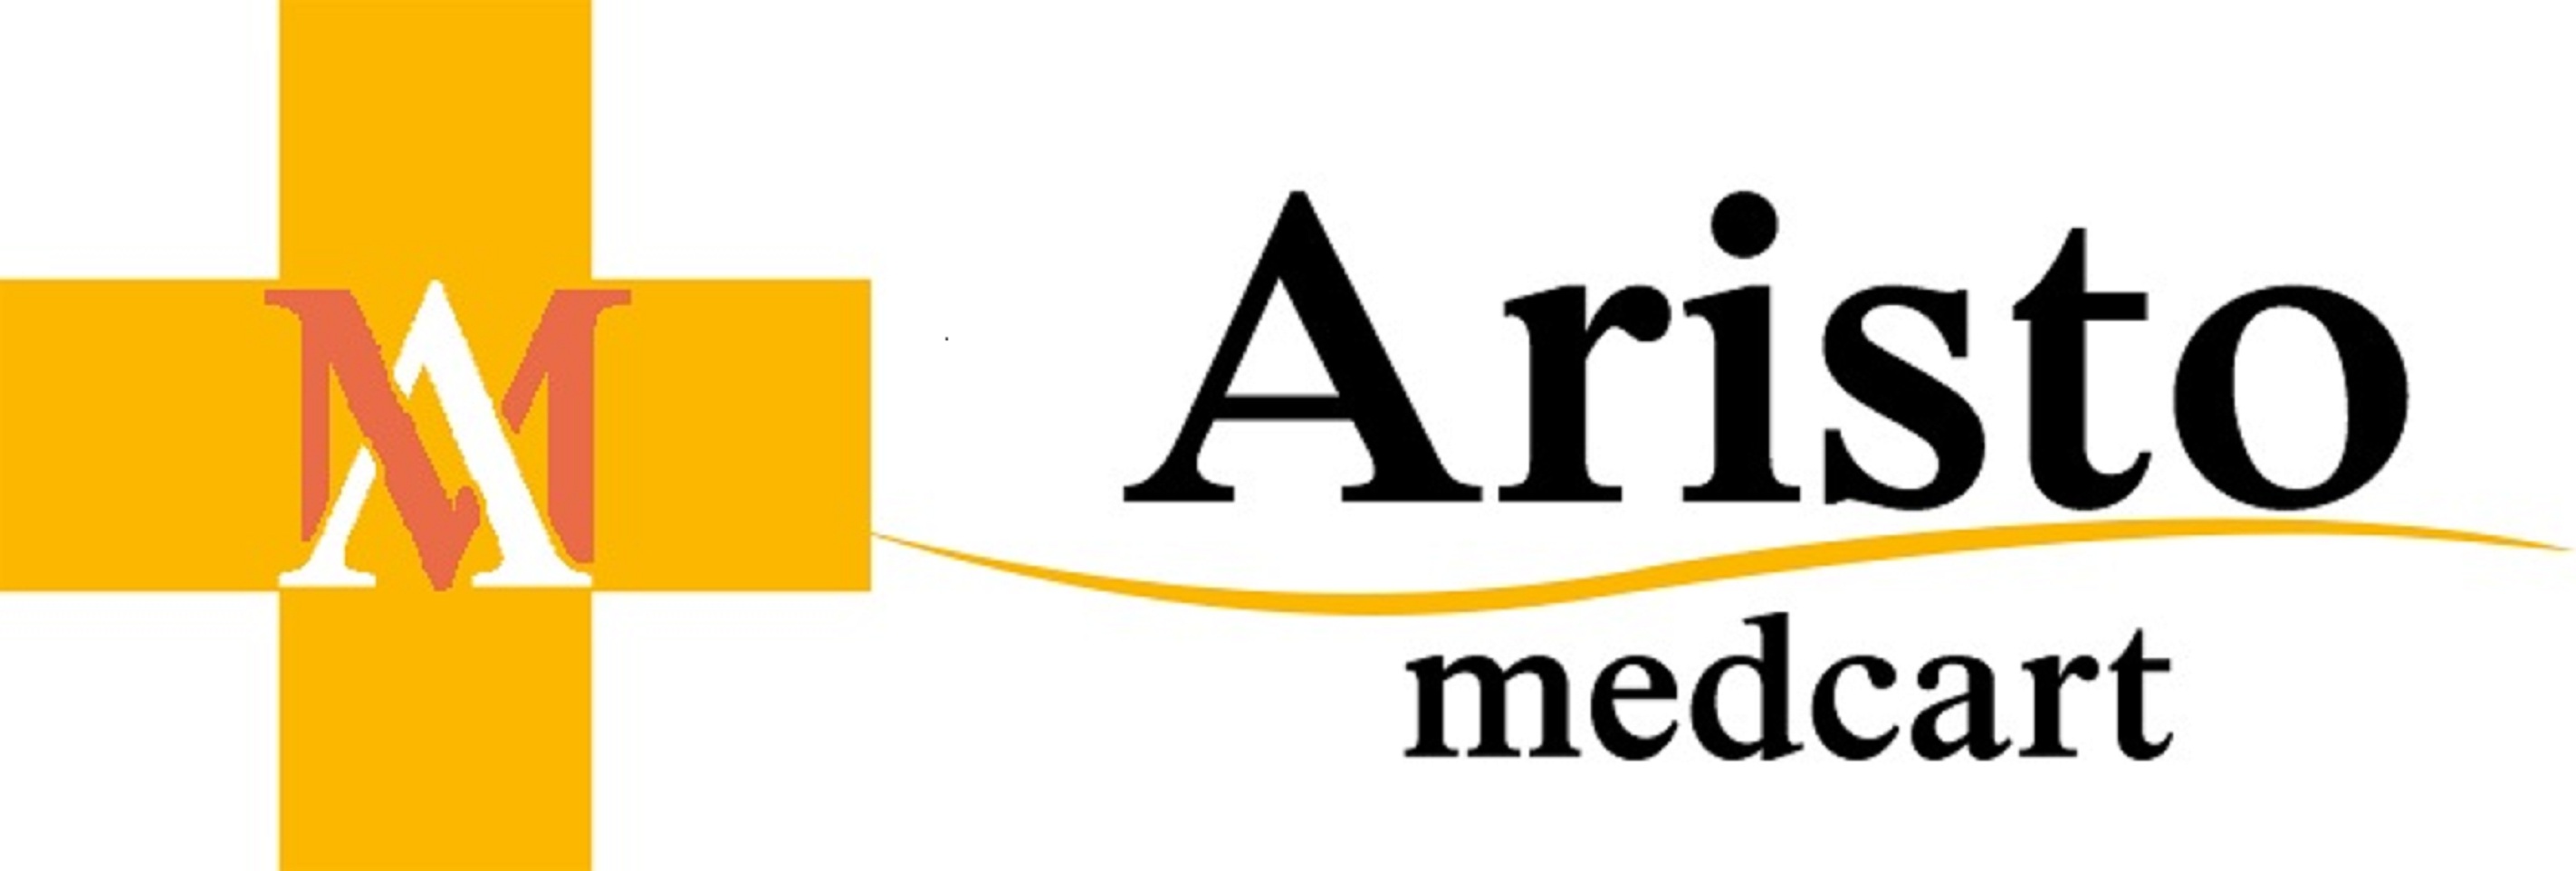 Aristo MedCart's Logo